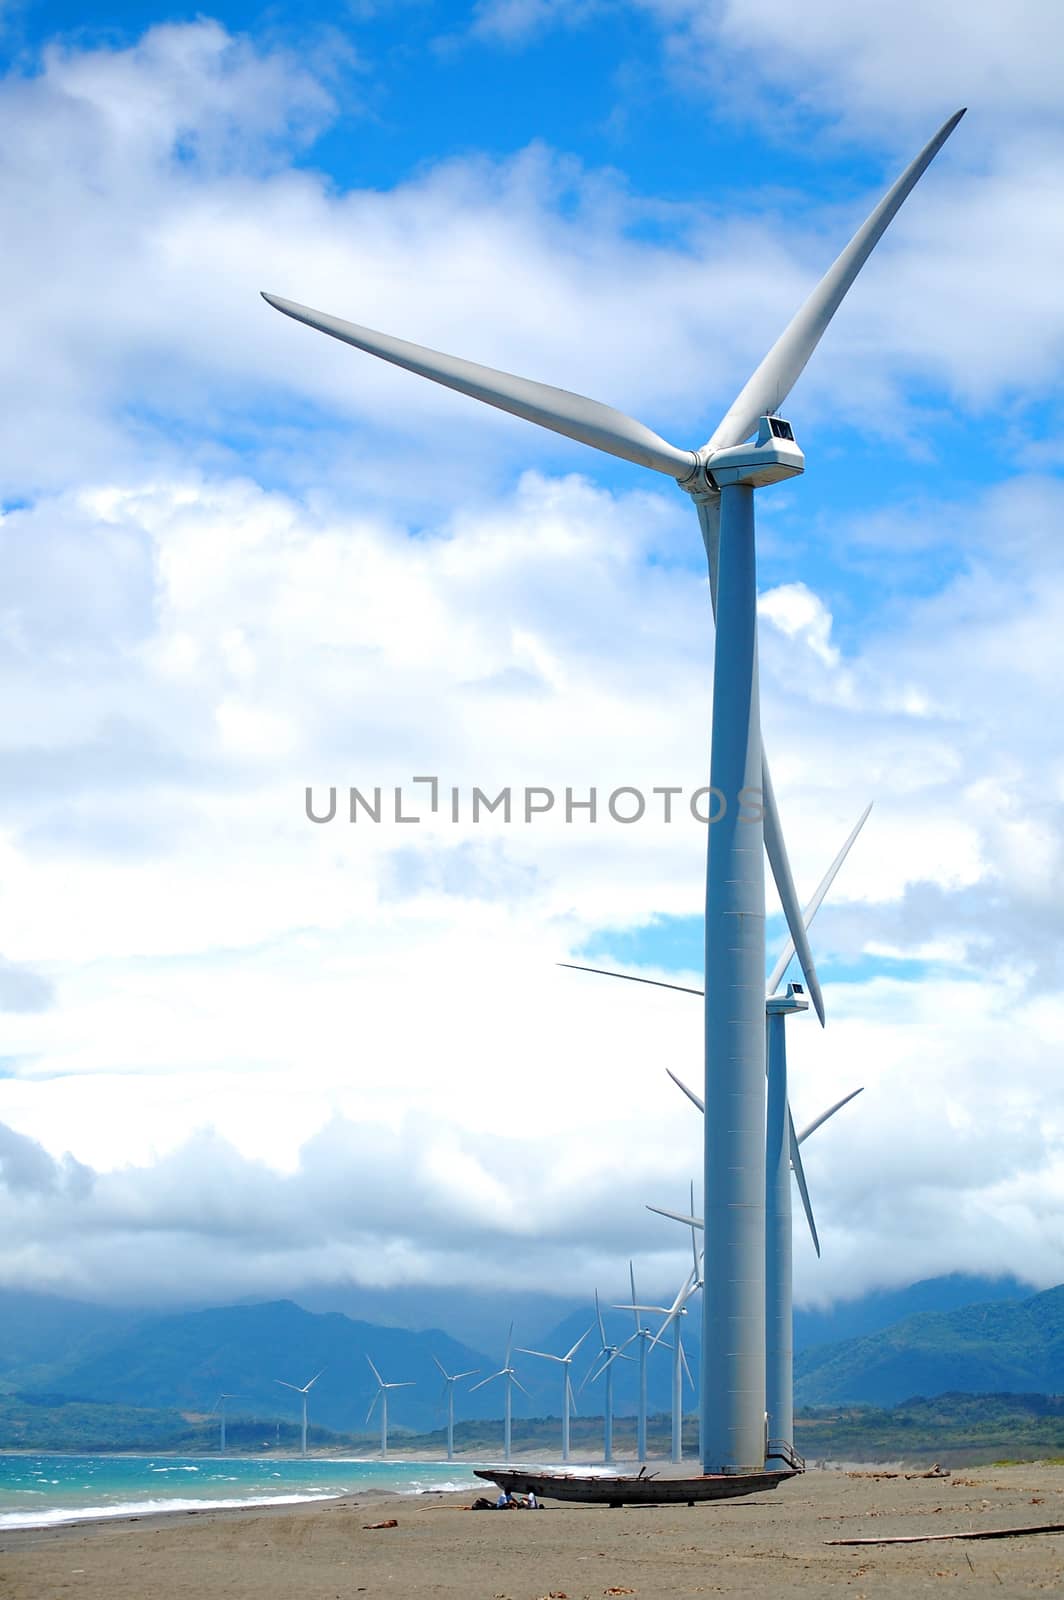 Bangui Wind Farm windmills in Ilocos Norte, Philippines